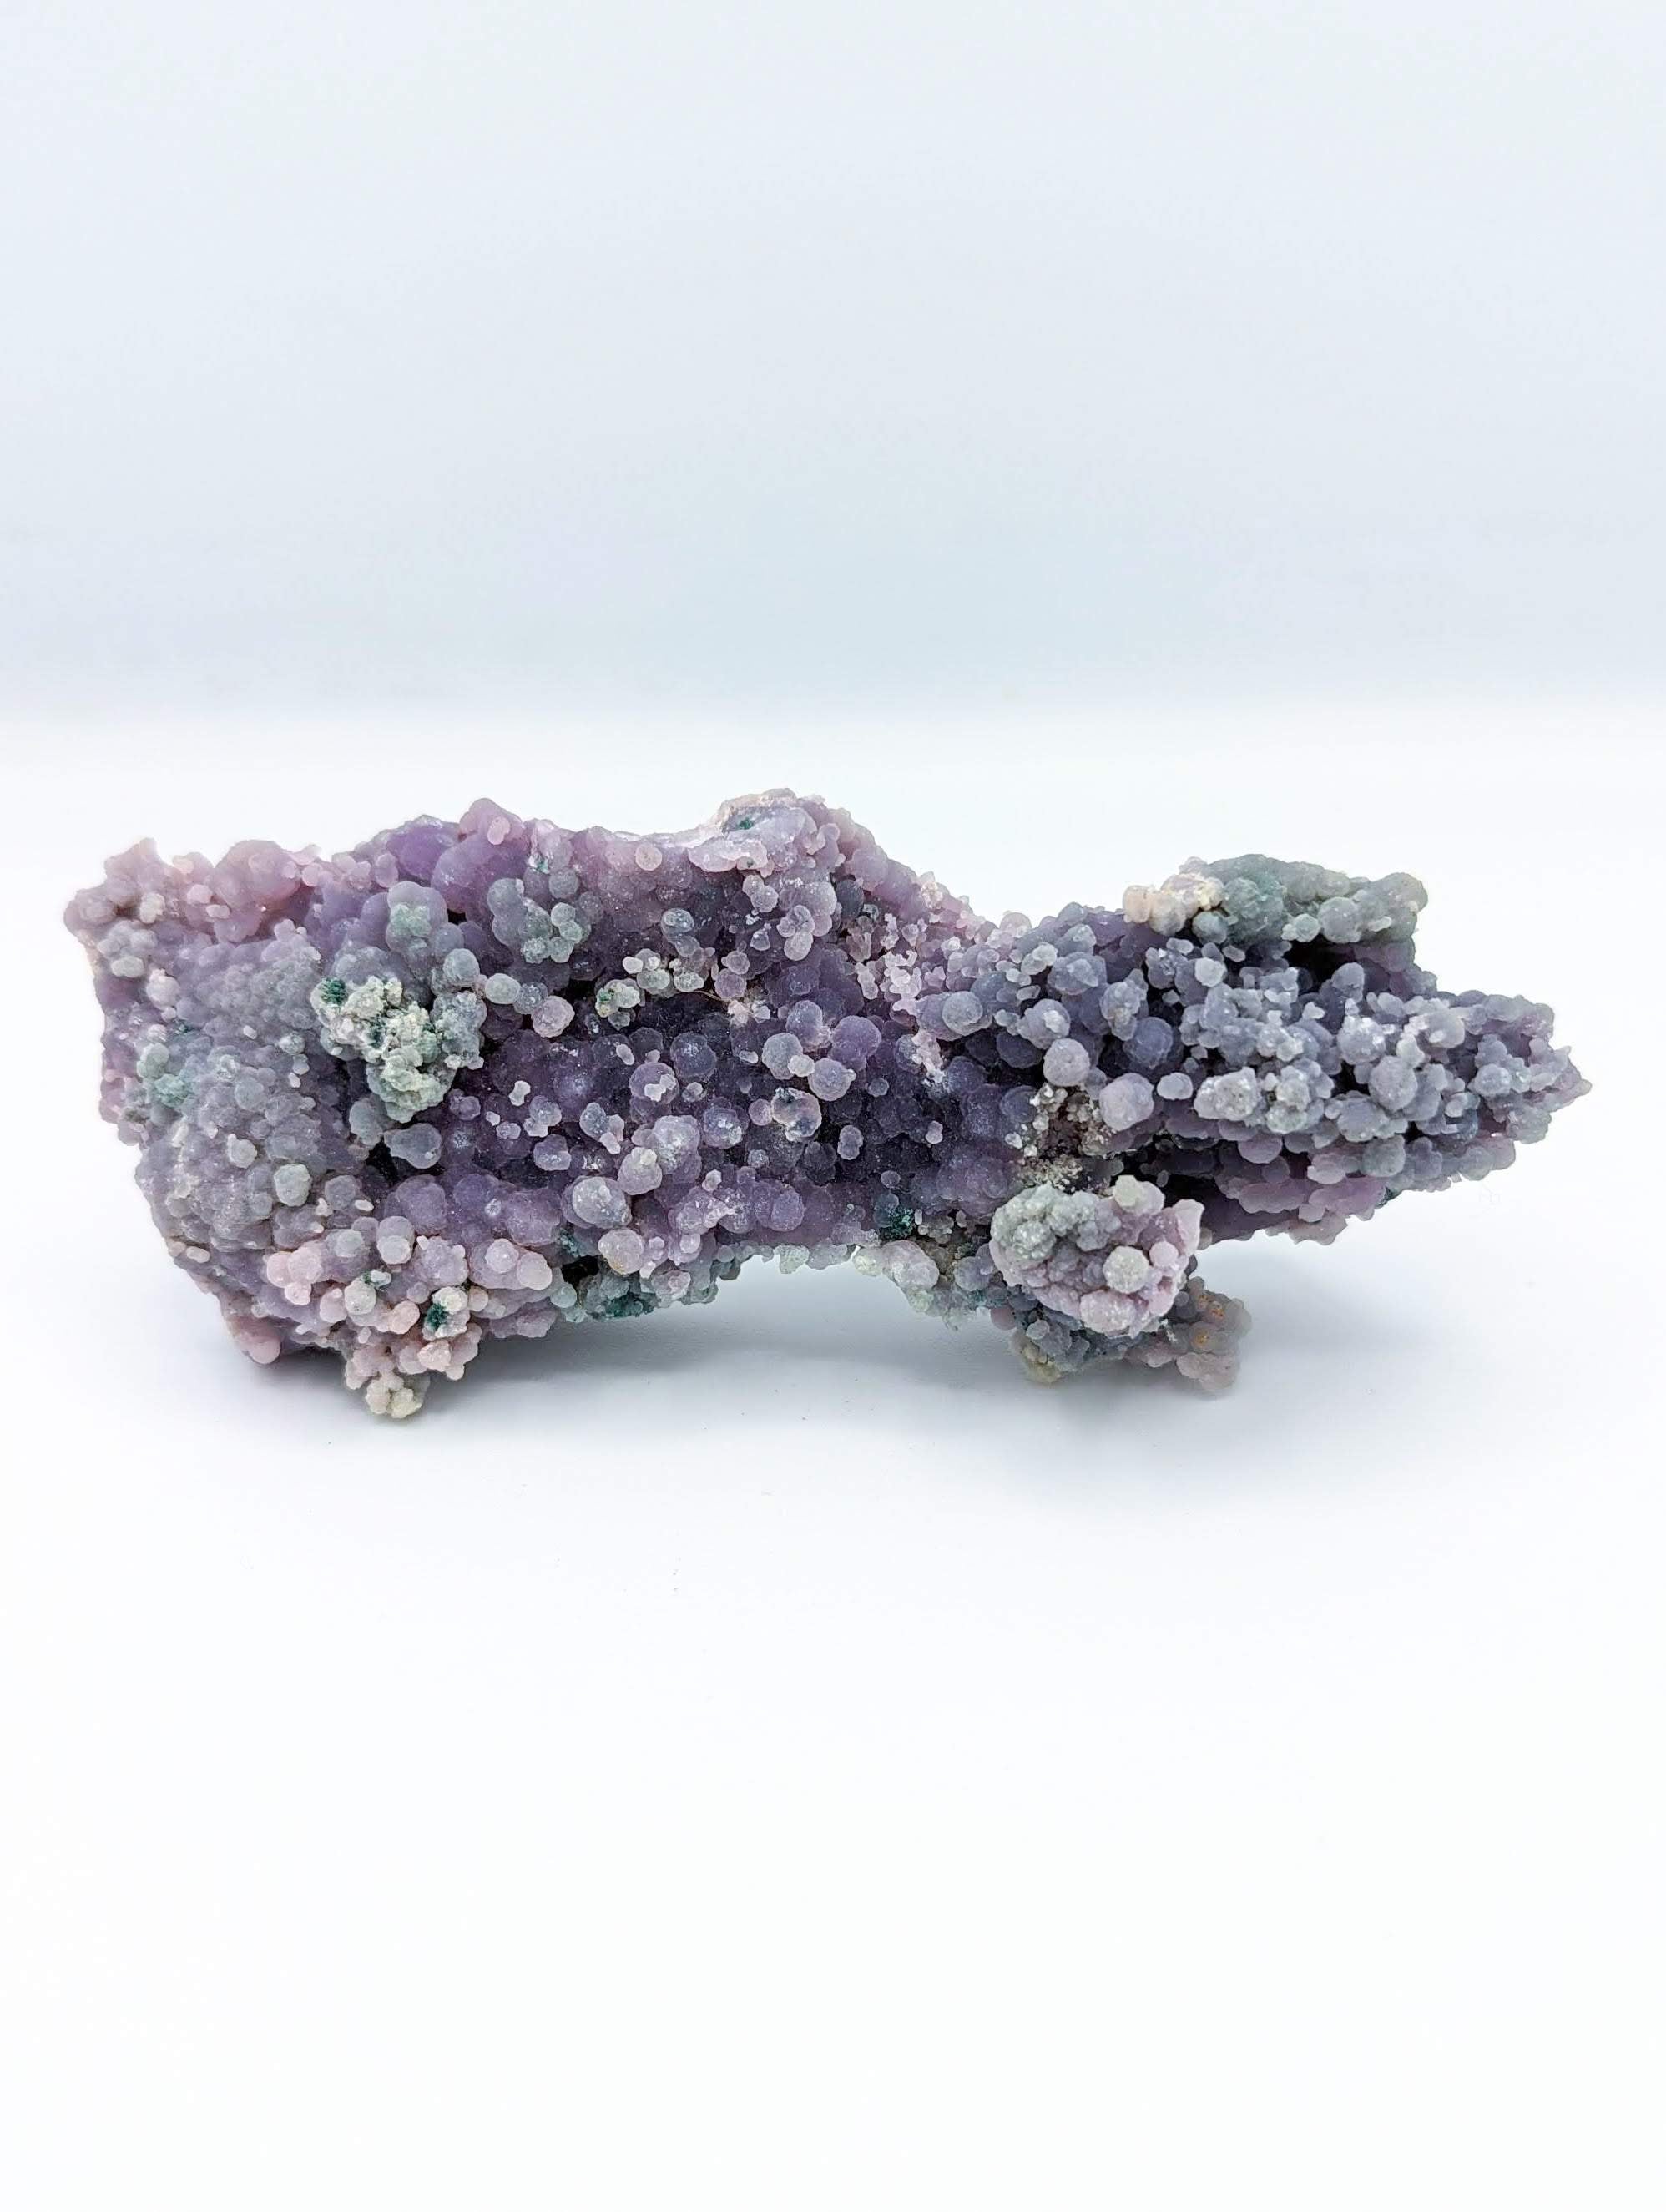 Grape Agate healing crystal. Crystal properties. 